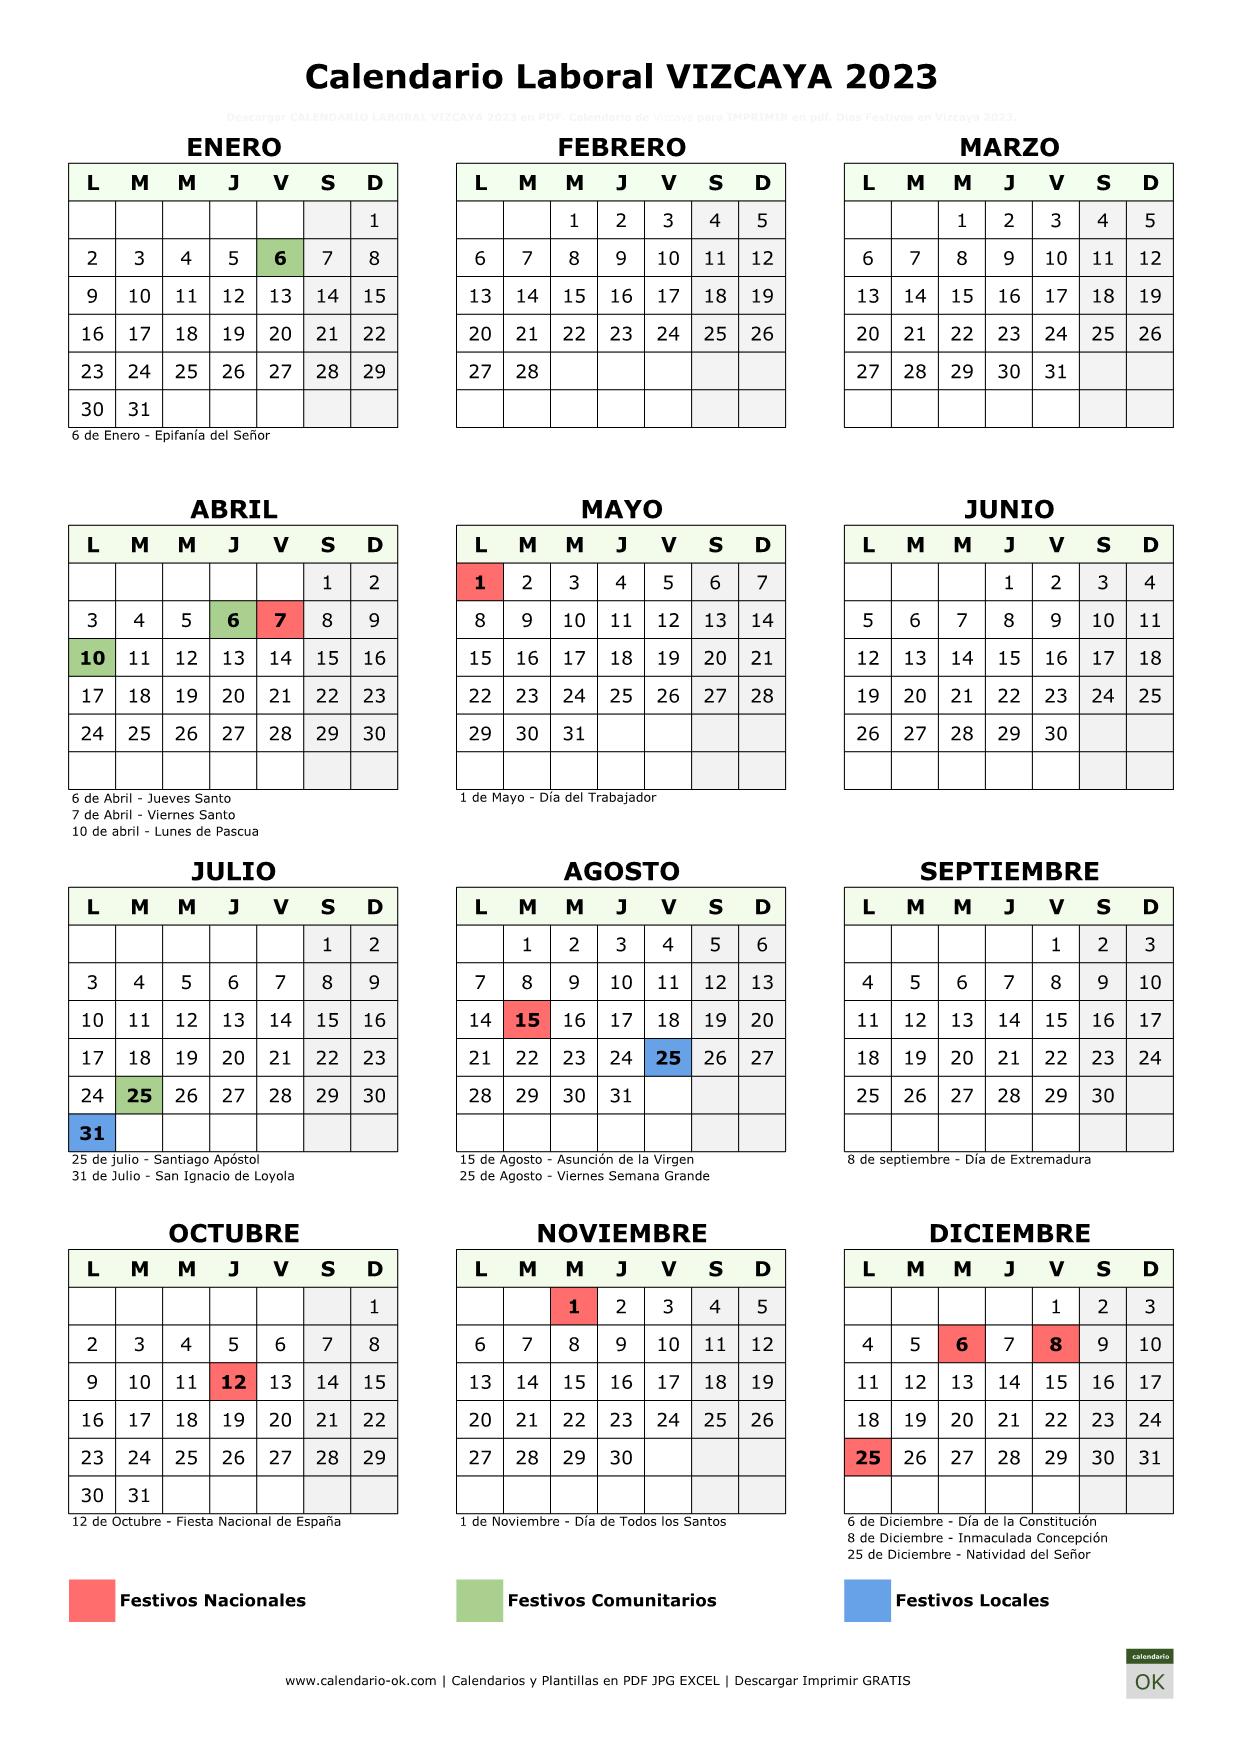 Calendario Laboral Vizcaya 2023